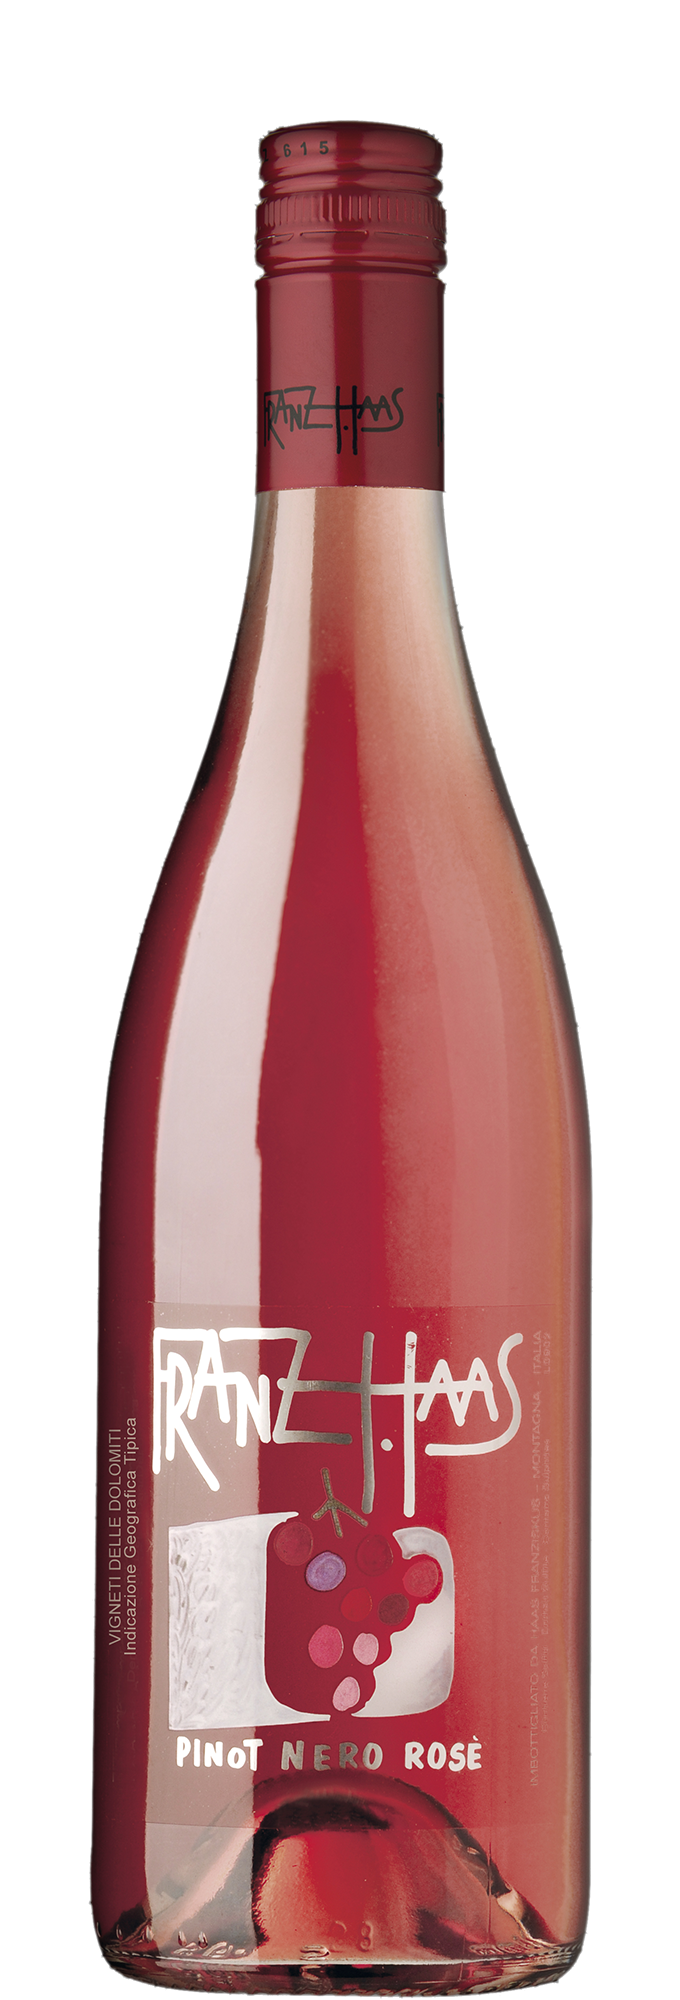 Pinot Nero Rosè Vigneti Delle Dolomiti IGT 2021 - Franz Haas